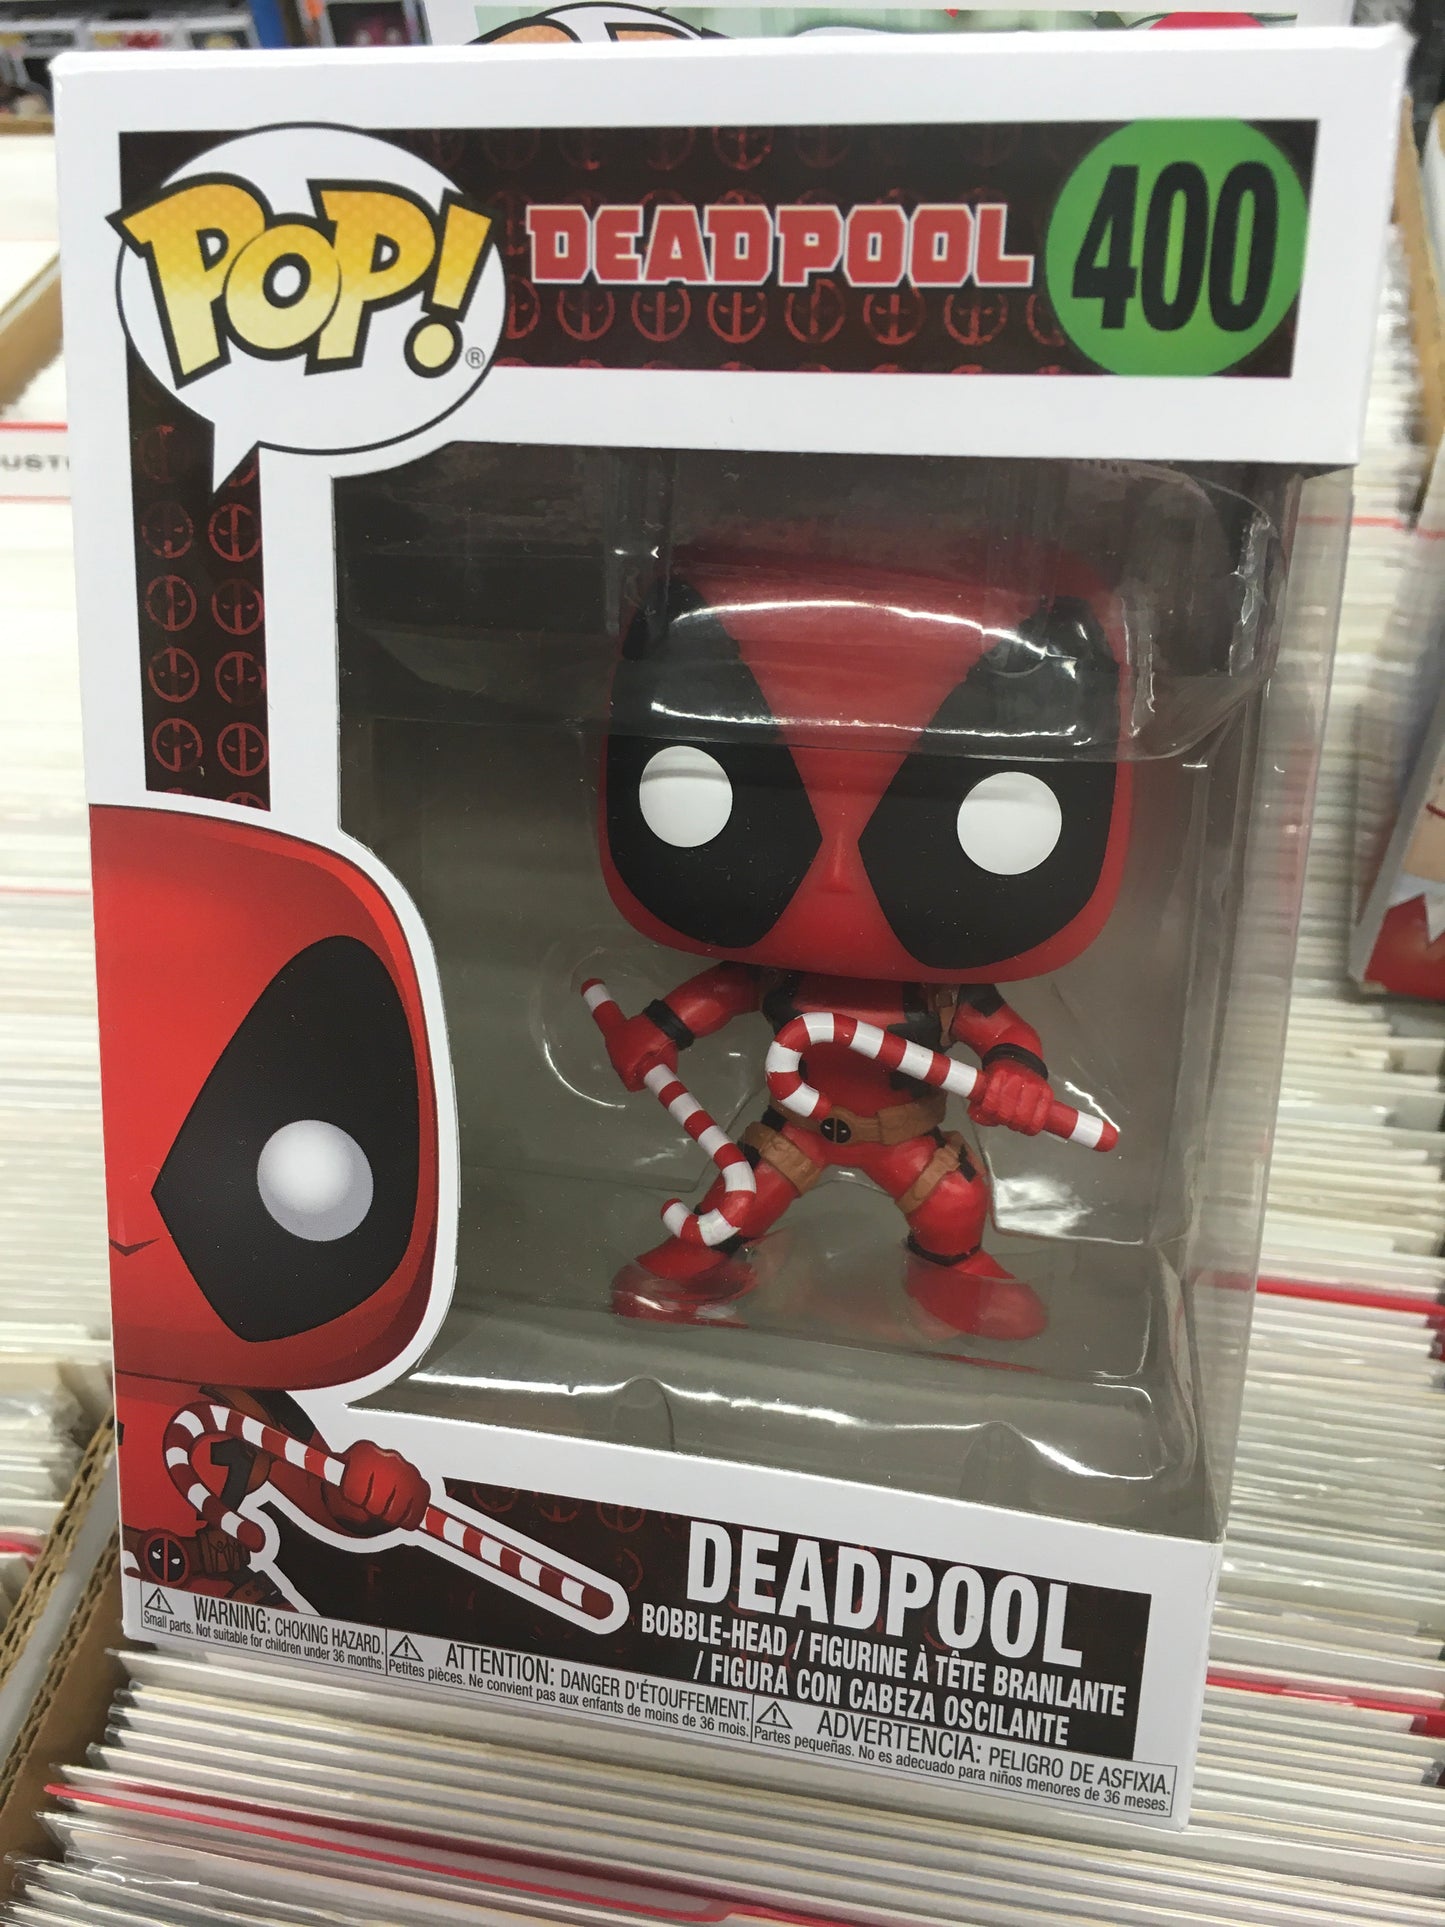 Marvel - Holiday Deadpool #400 - Funko Pop! Vinyl Figure